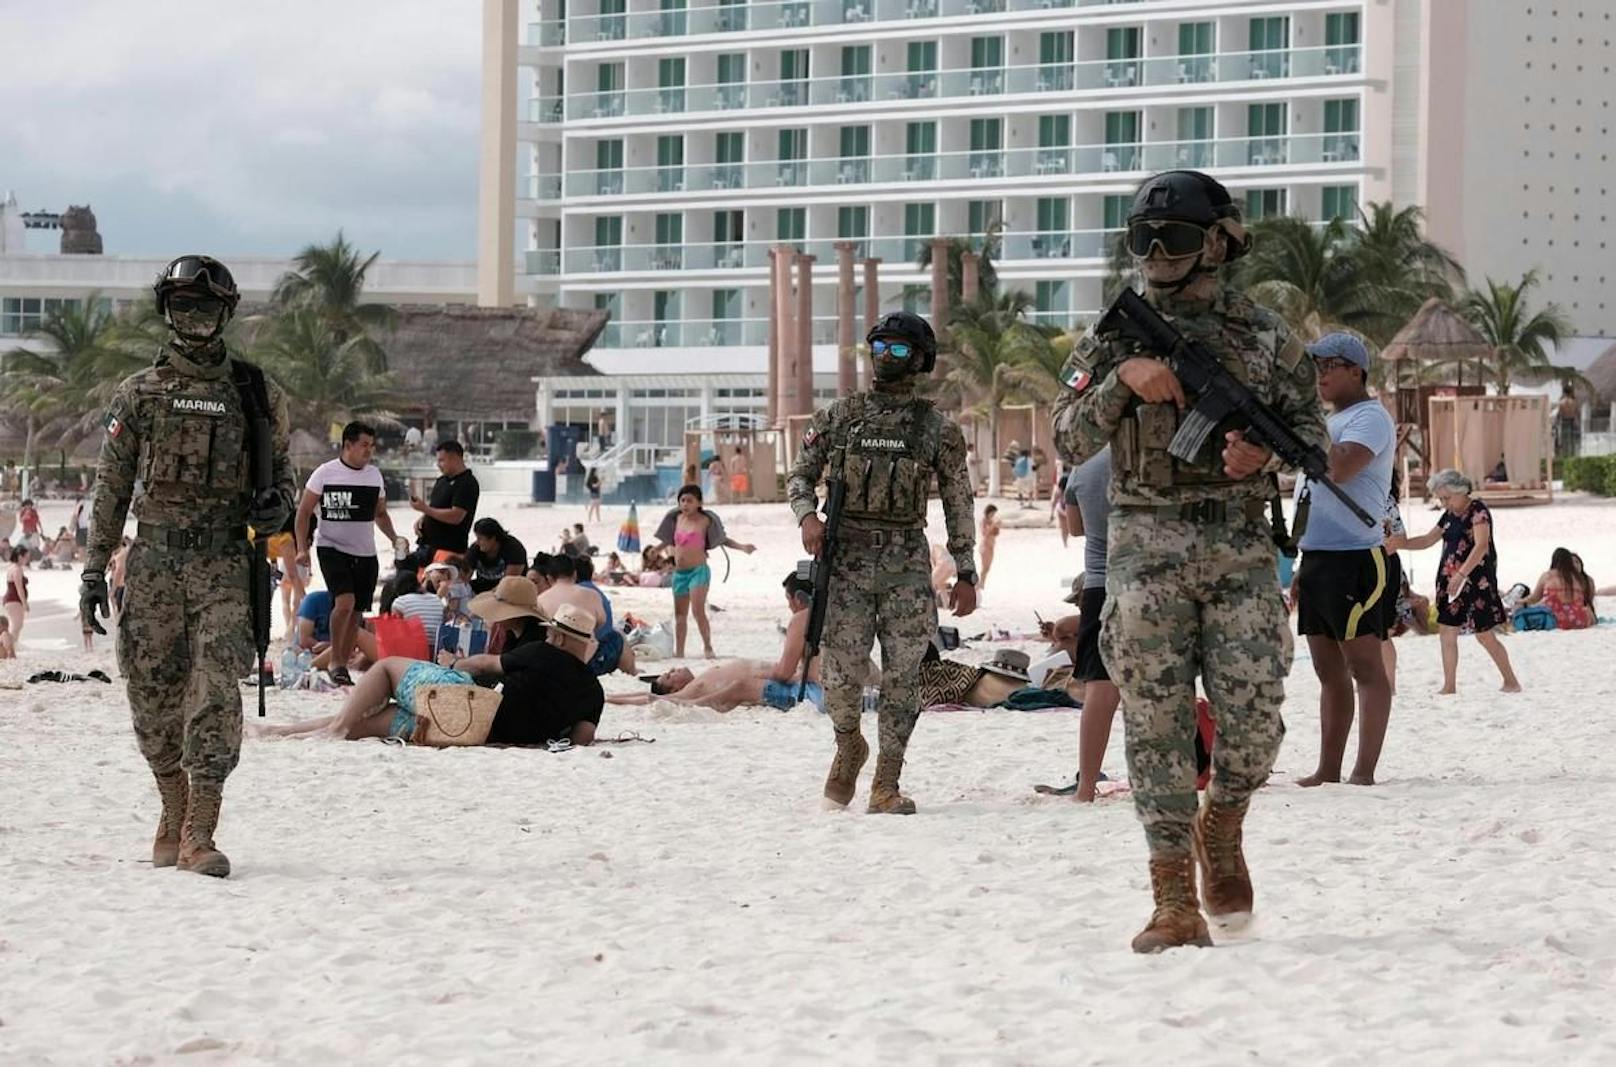 Wegen rivalisierender Banden steigt in Mexiko auch die Gefahr für Touristen.